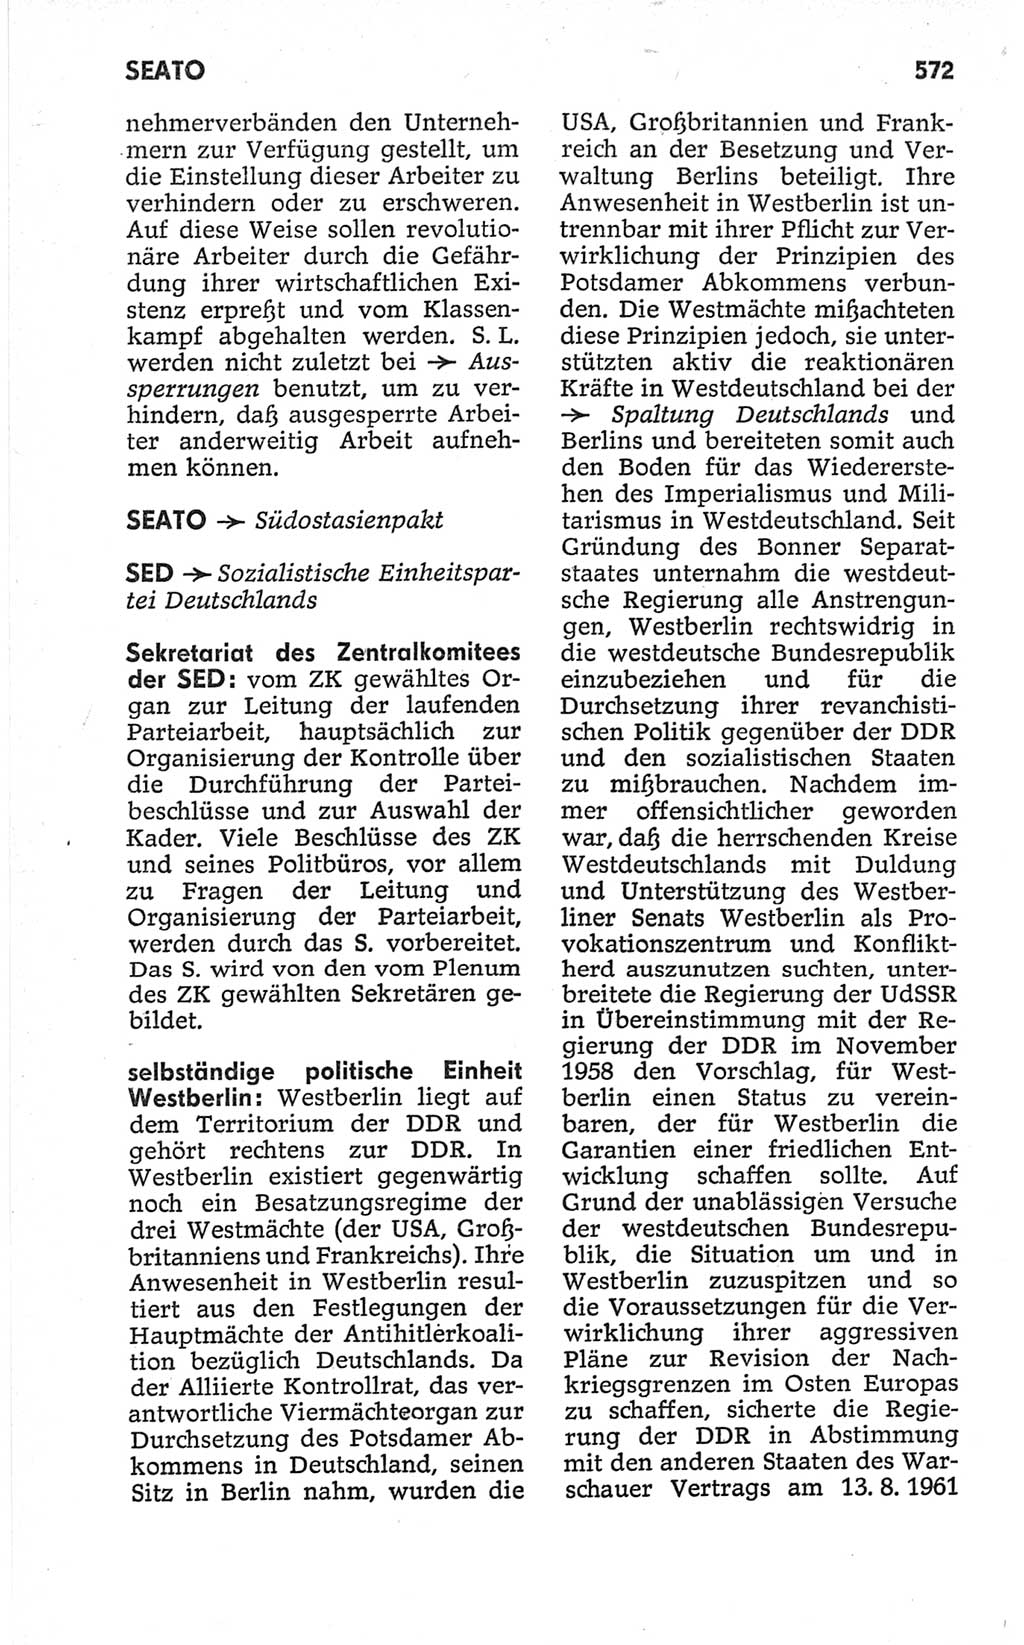 Kleines politisches Wörterbuch [Deutsche Demokratische Republik (DDR)] 1967, Seite 572 (Kl. pol. Wb. DDR 1967, S. 572)